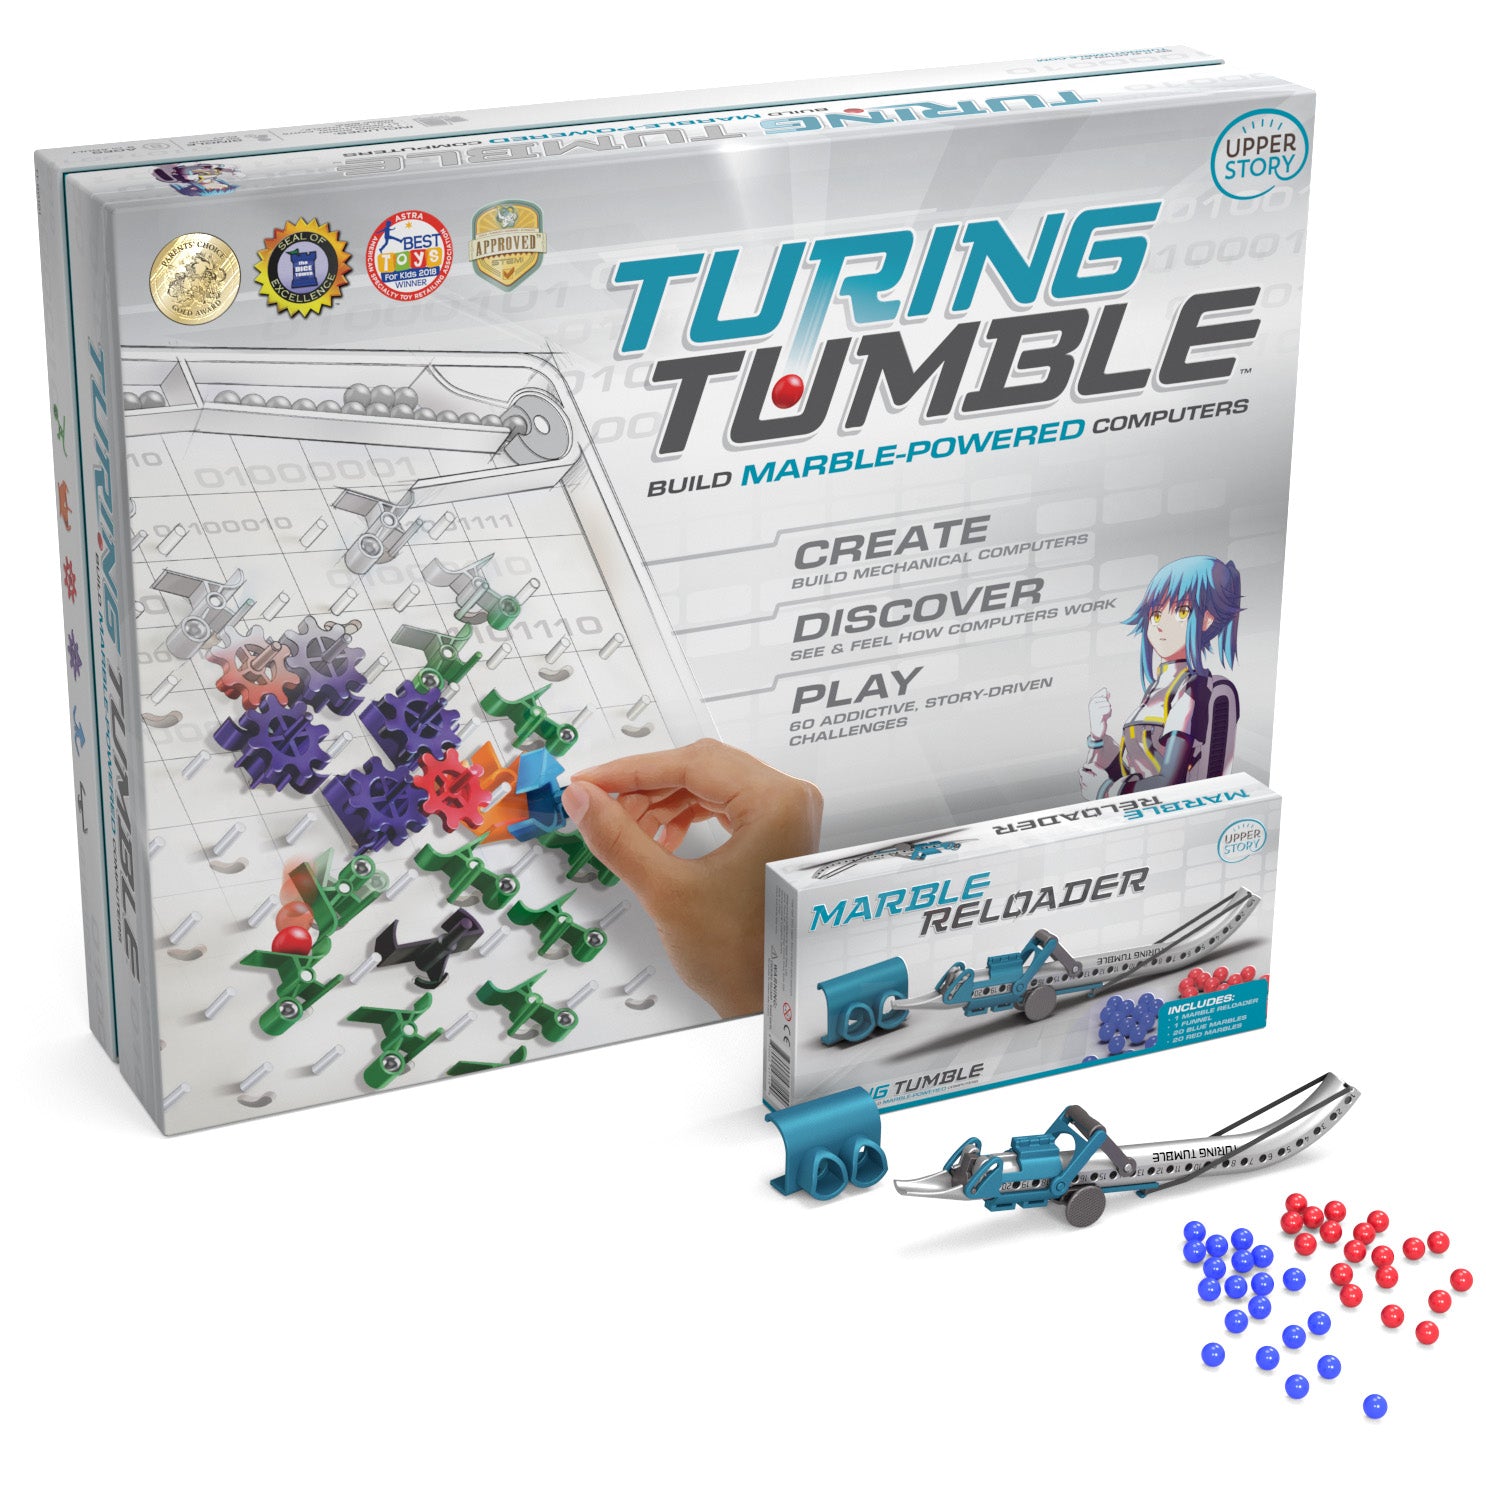 Meet Turing Tumble 